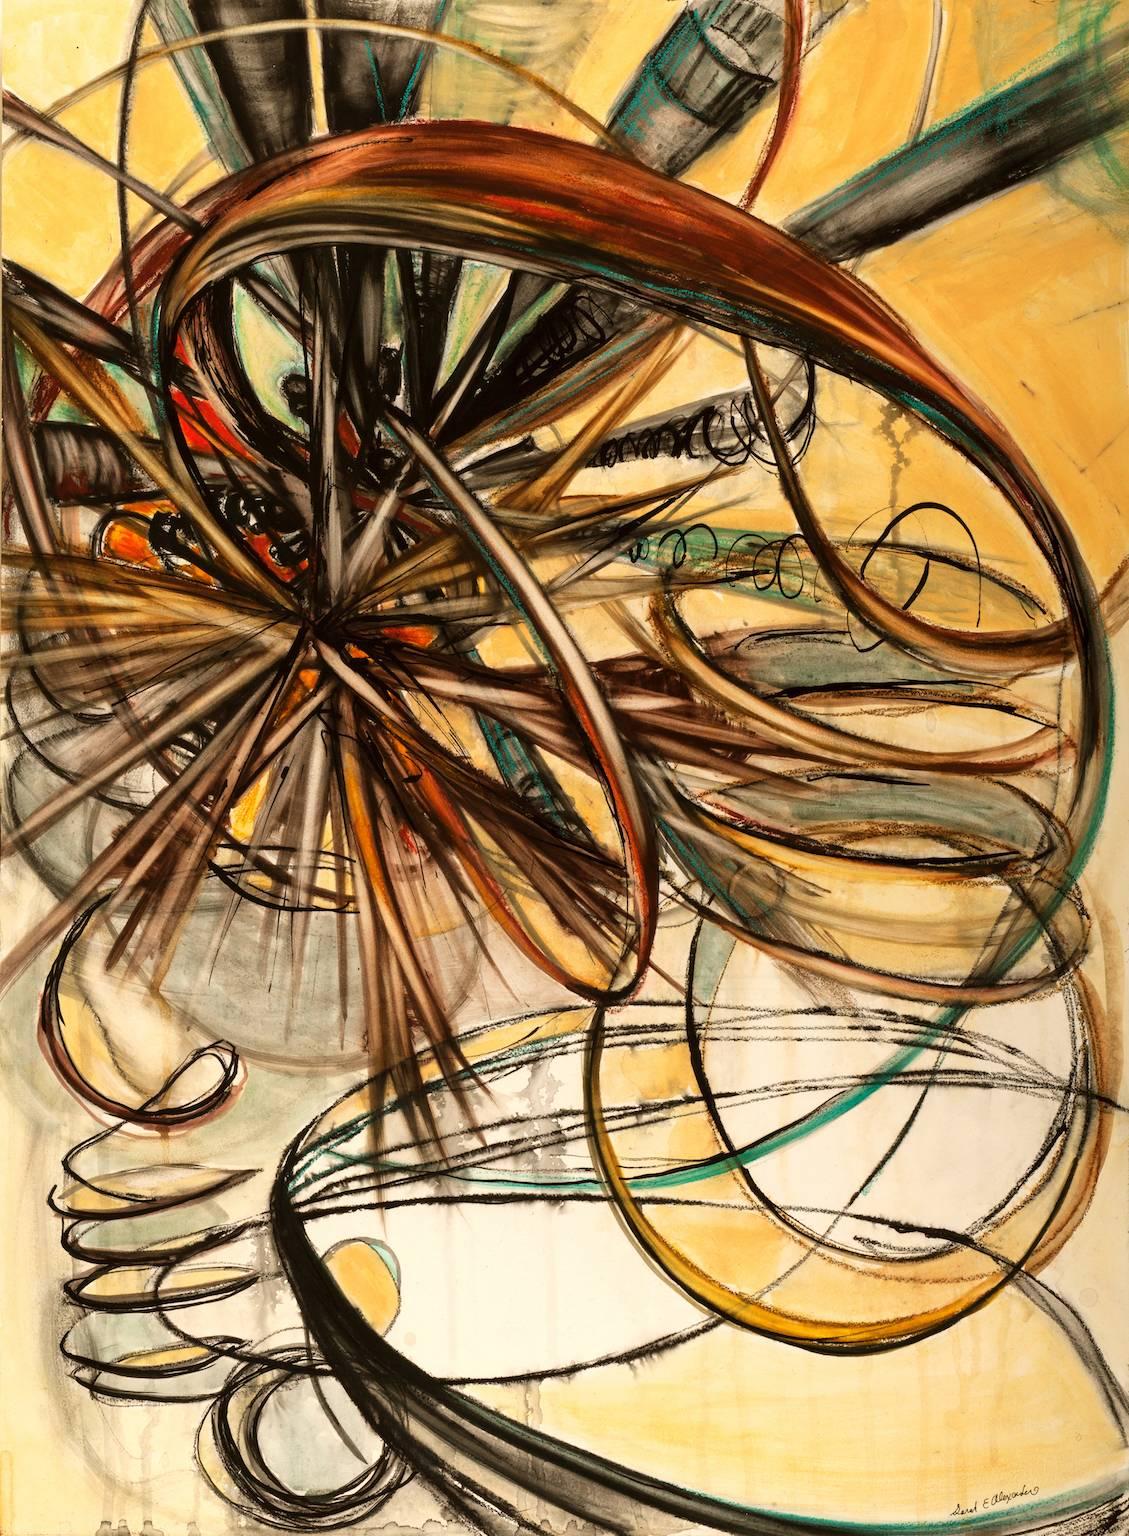 "Wired, Out of Time", abstrakt, Kohle, gelb, sepia, Aquarellmalerei